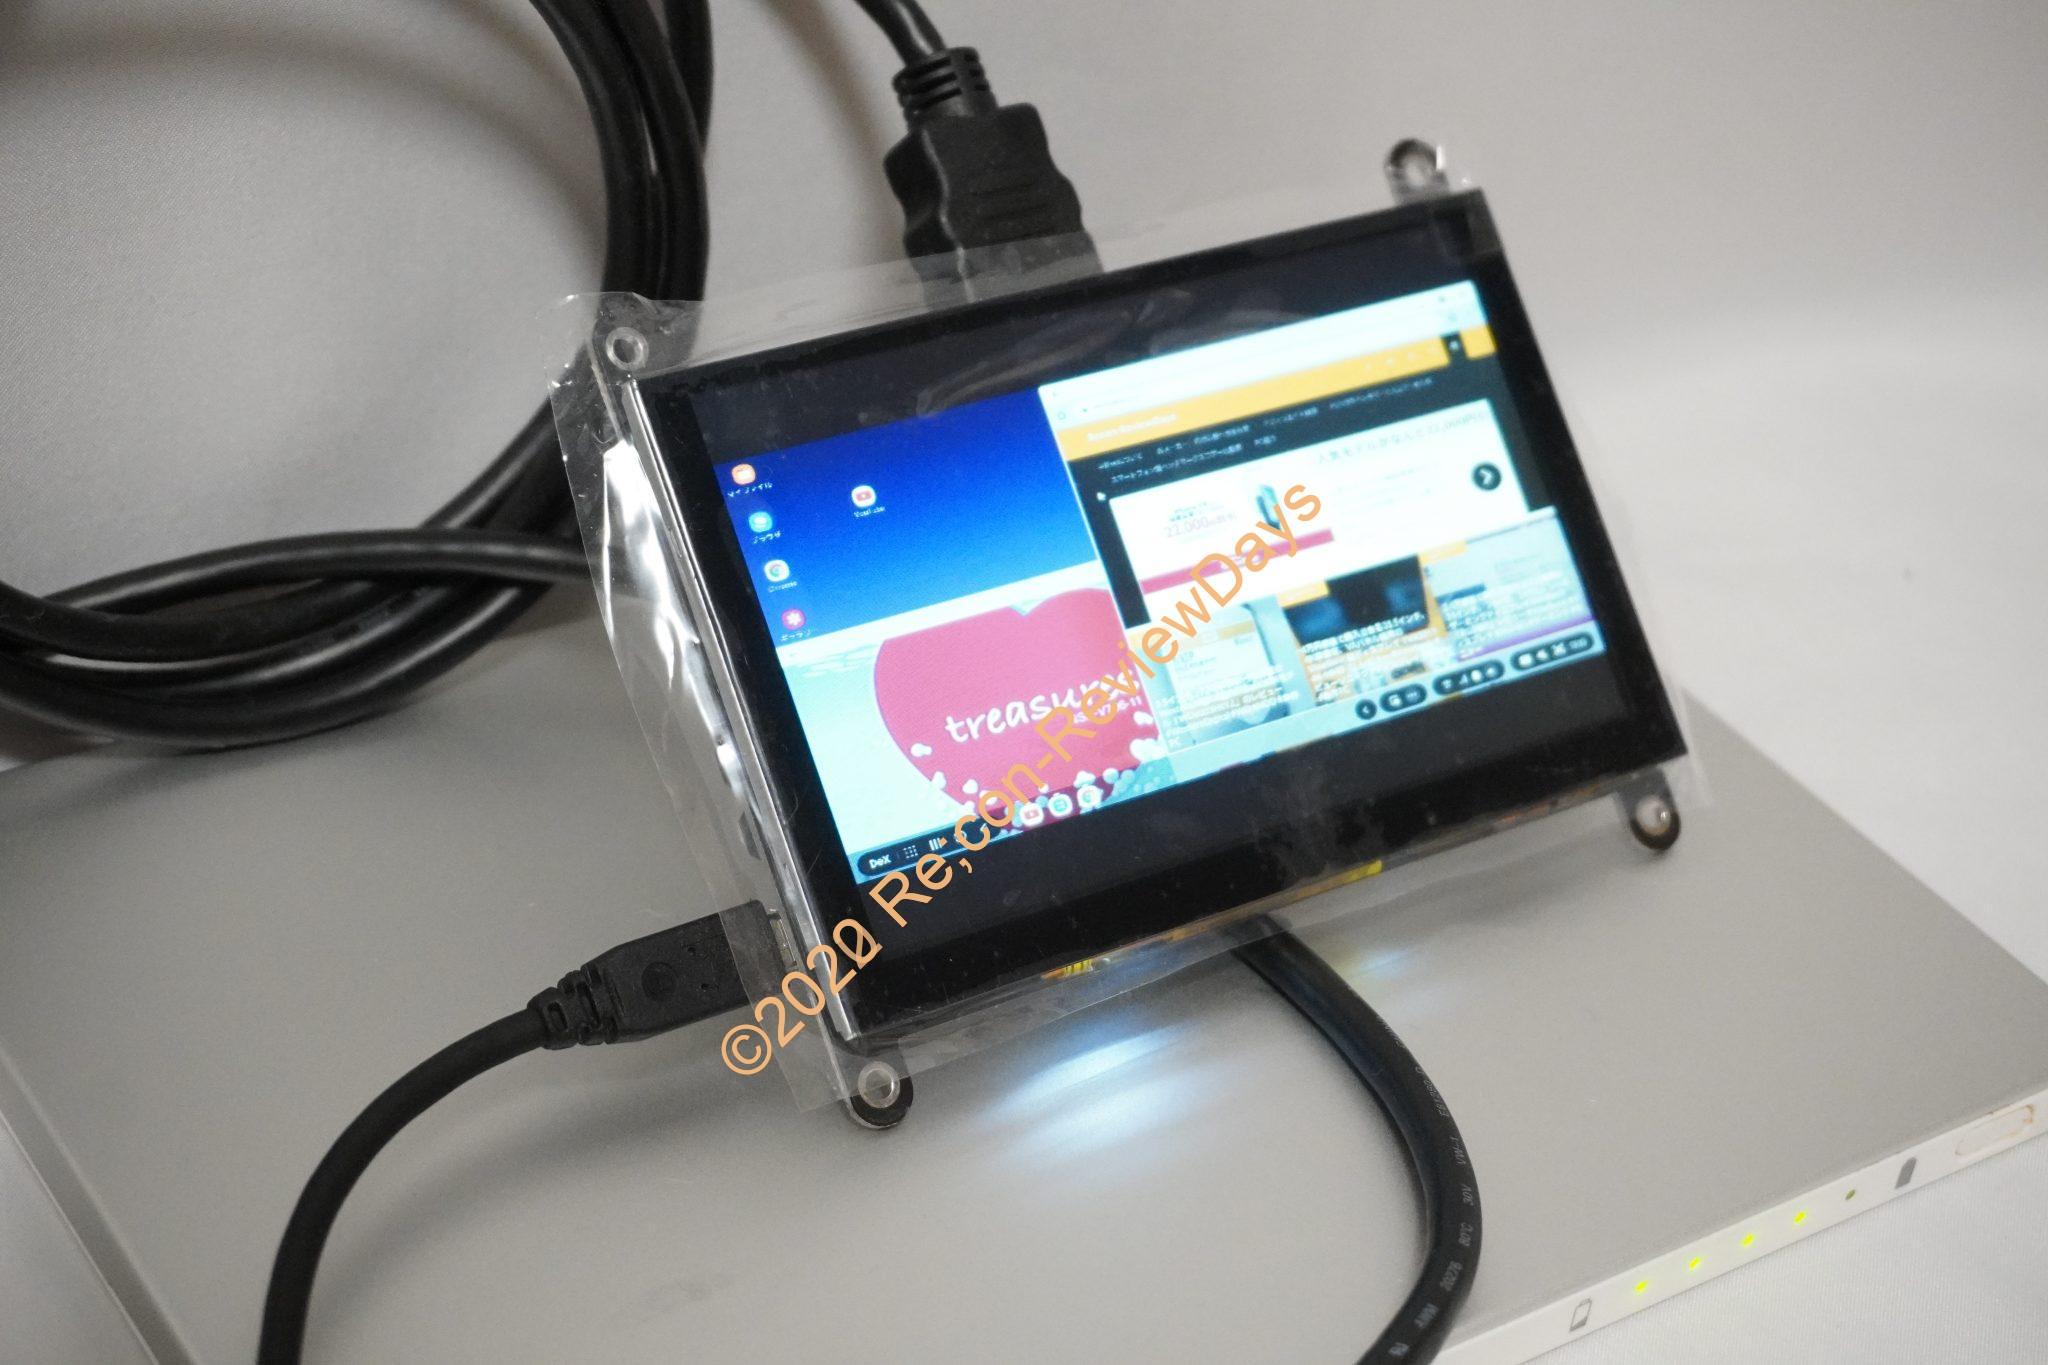 5インチWVGA、タッチパネル搭載、micro-USB電源、HDMI入力対応のELECROW製モバイルディスプレイ「RC050S」を検証する